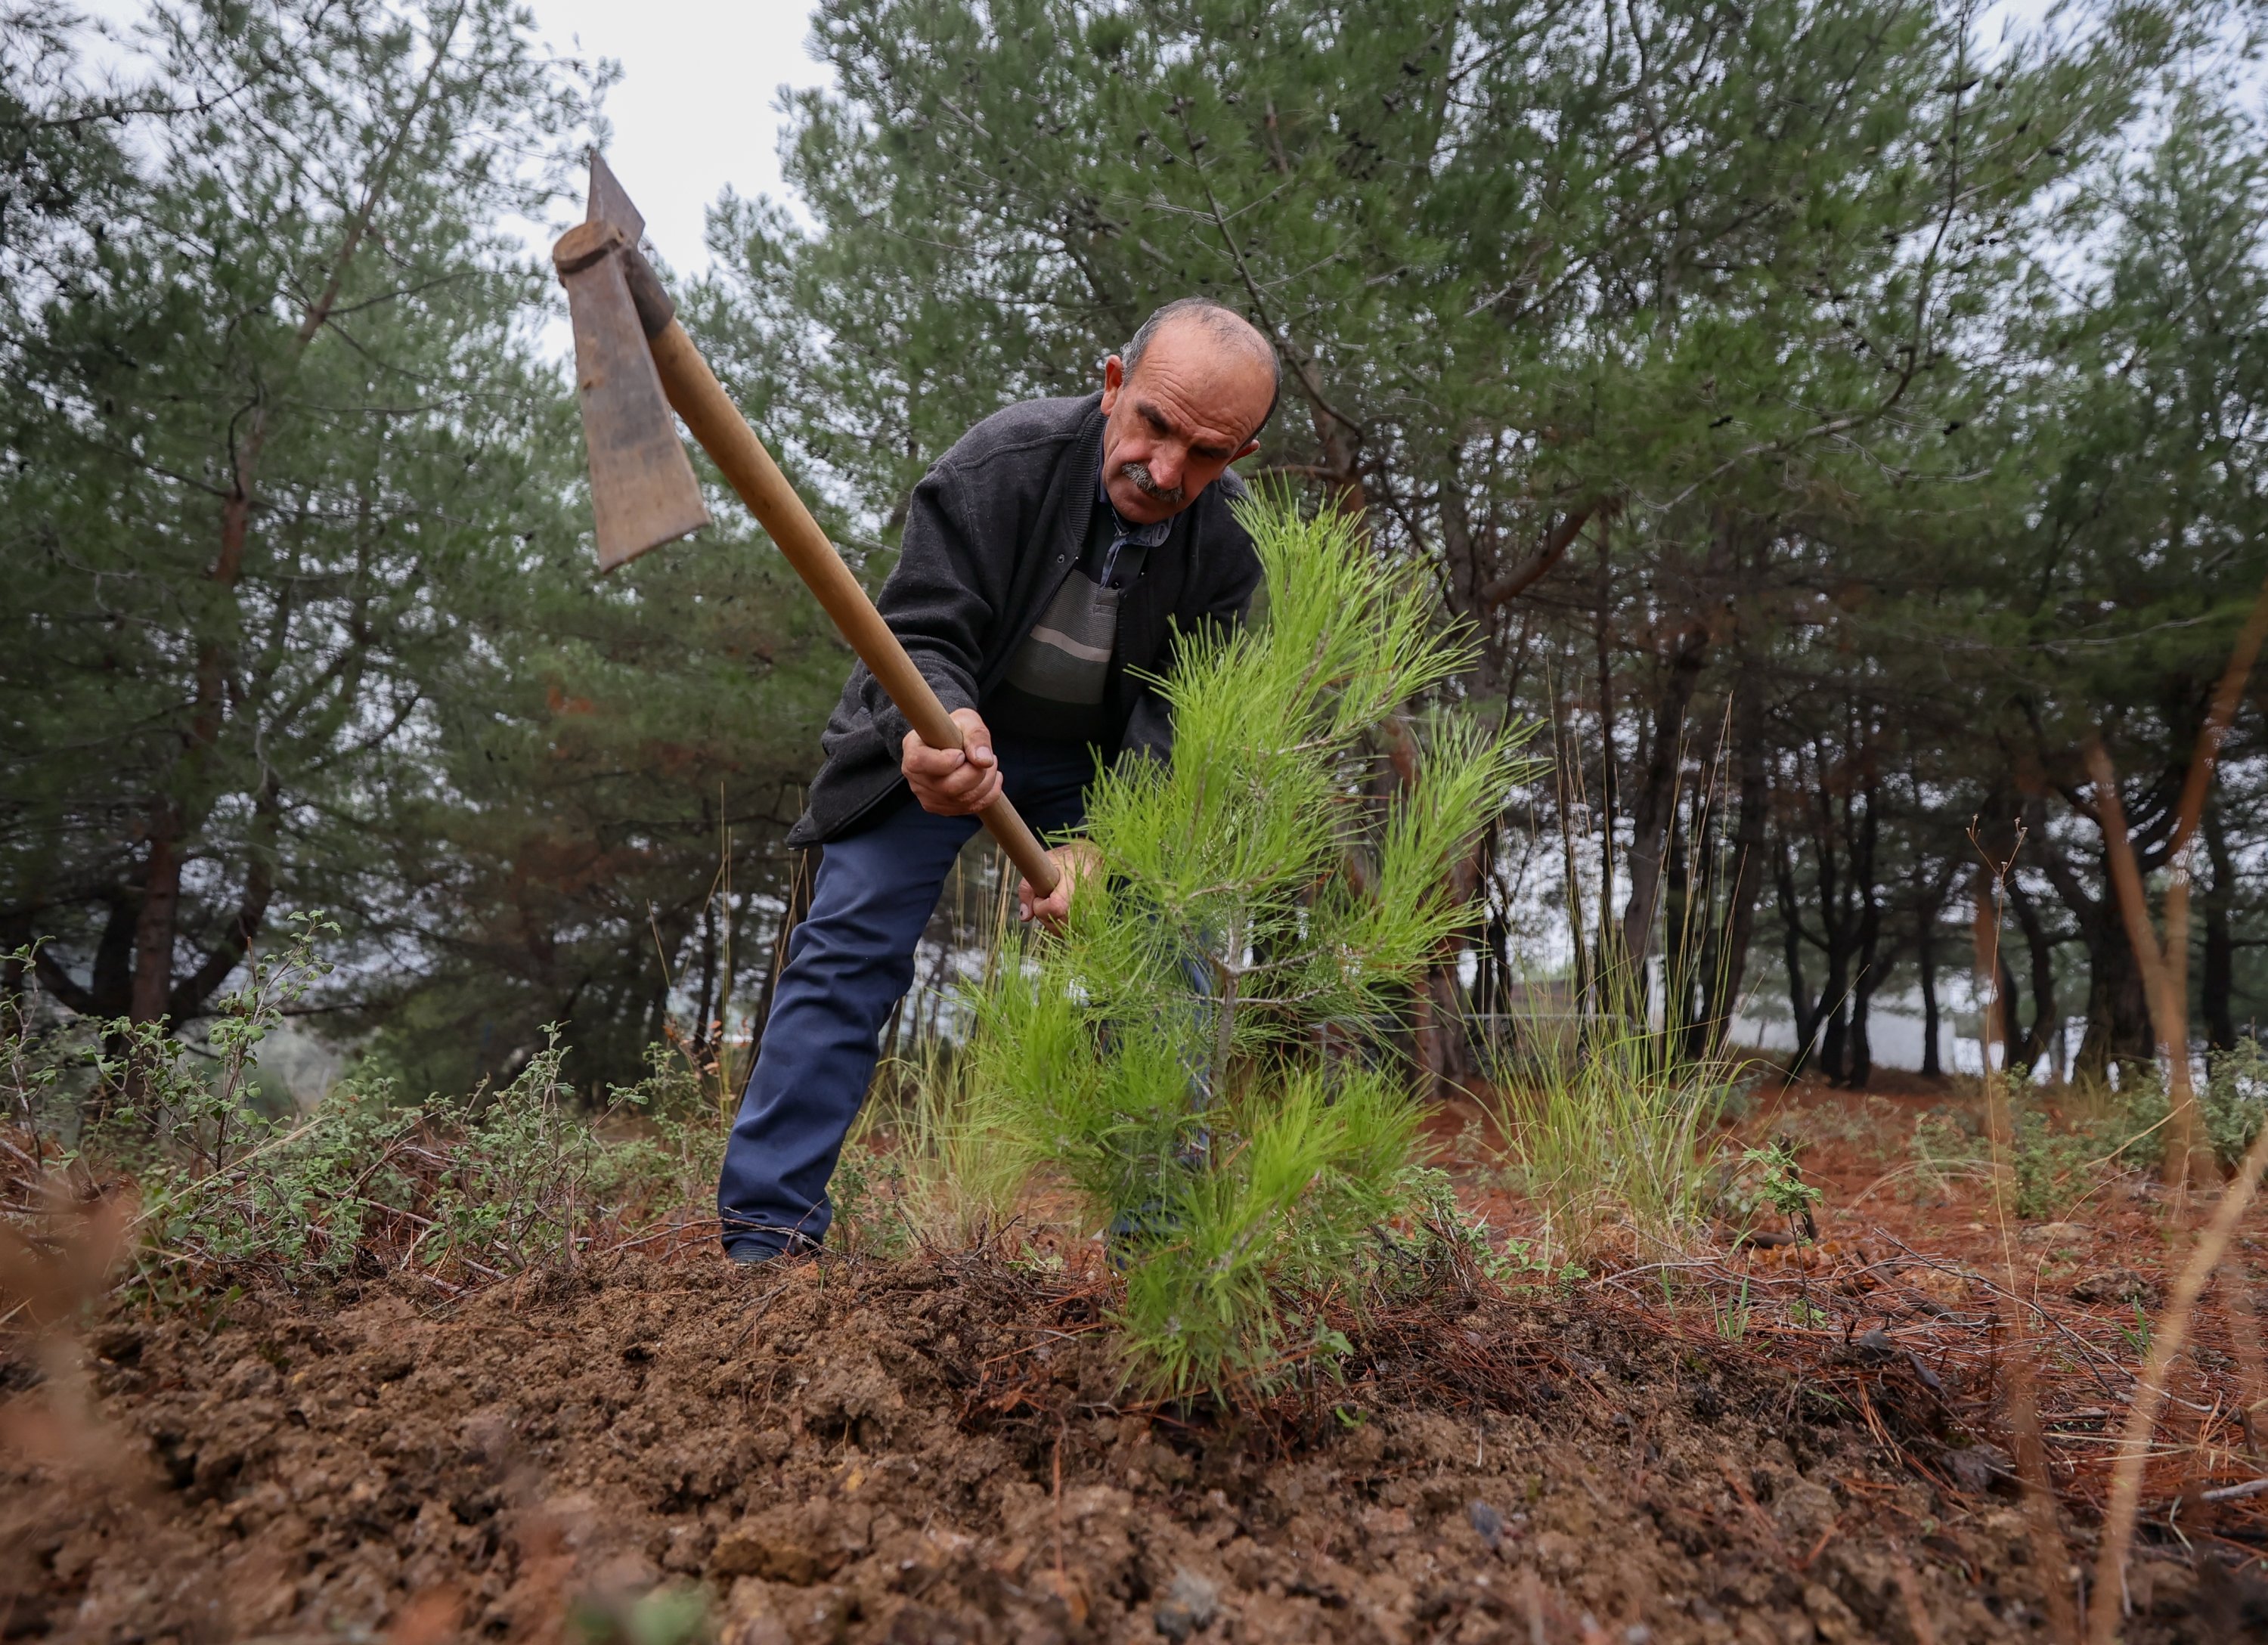 Türkiye battles land loss due to erosion, pledges to do more 